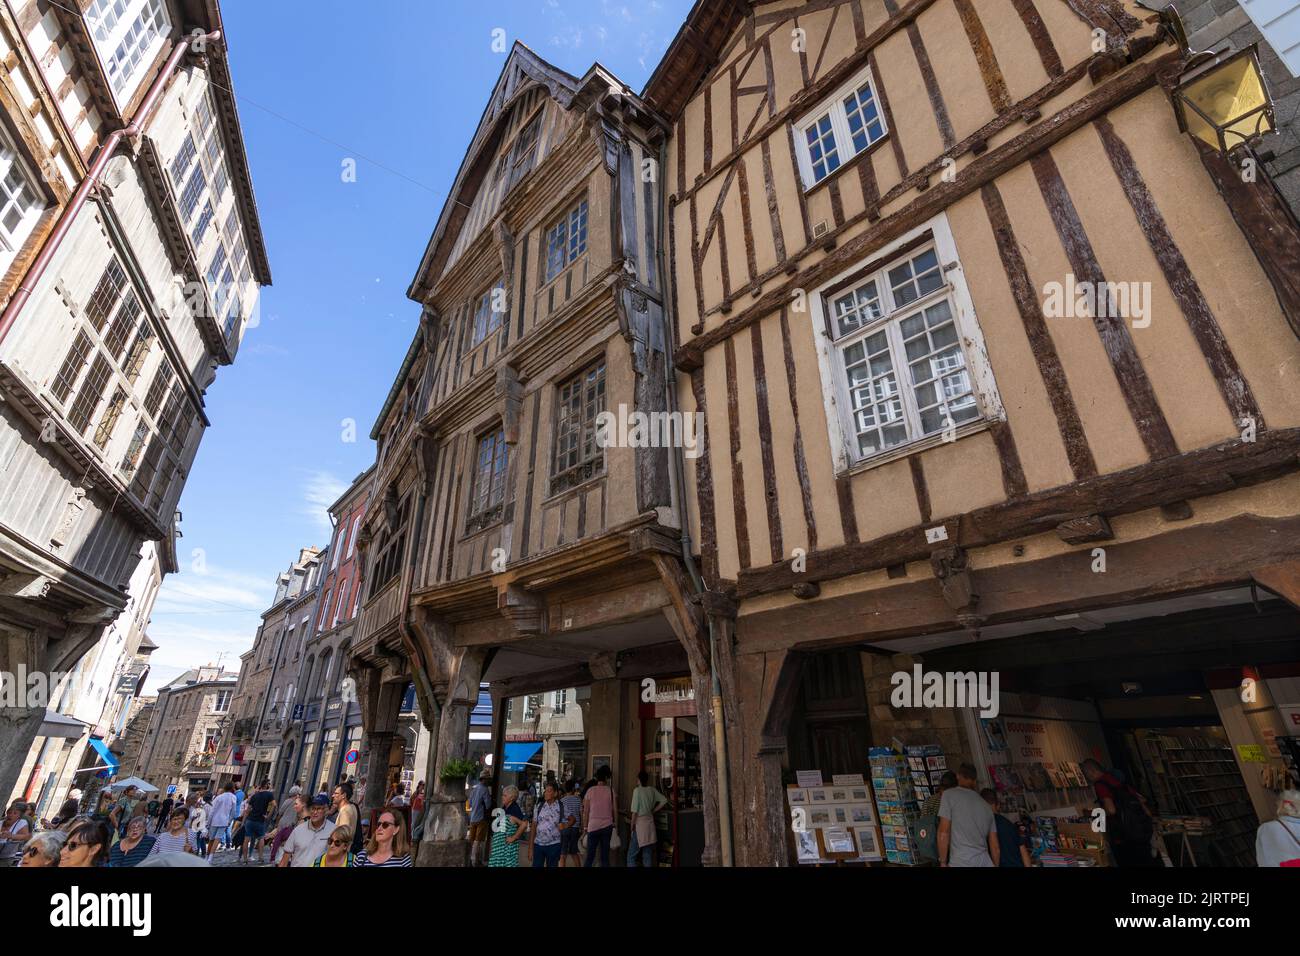 Touristenmassen, die eine Einkaufsstraße in der Innenstadt der mittelalterlichen Stadt Dinan, Bretagne, Frankreich, besuchen Stockfoto